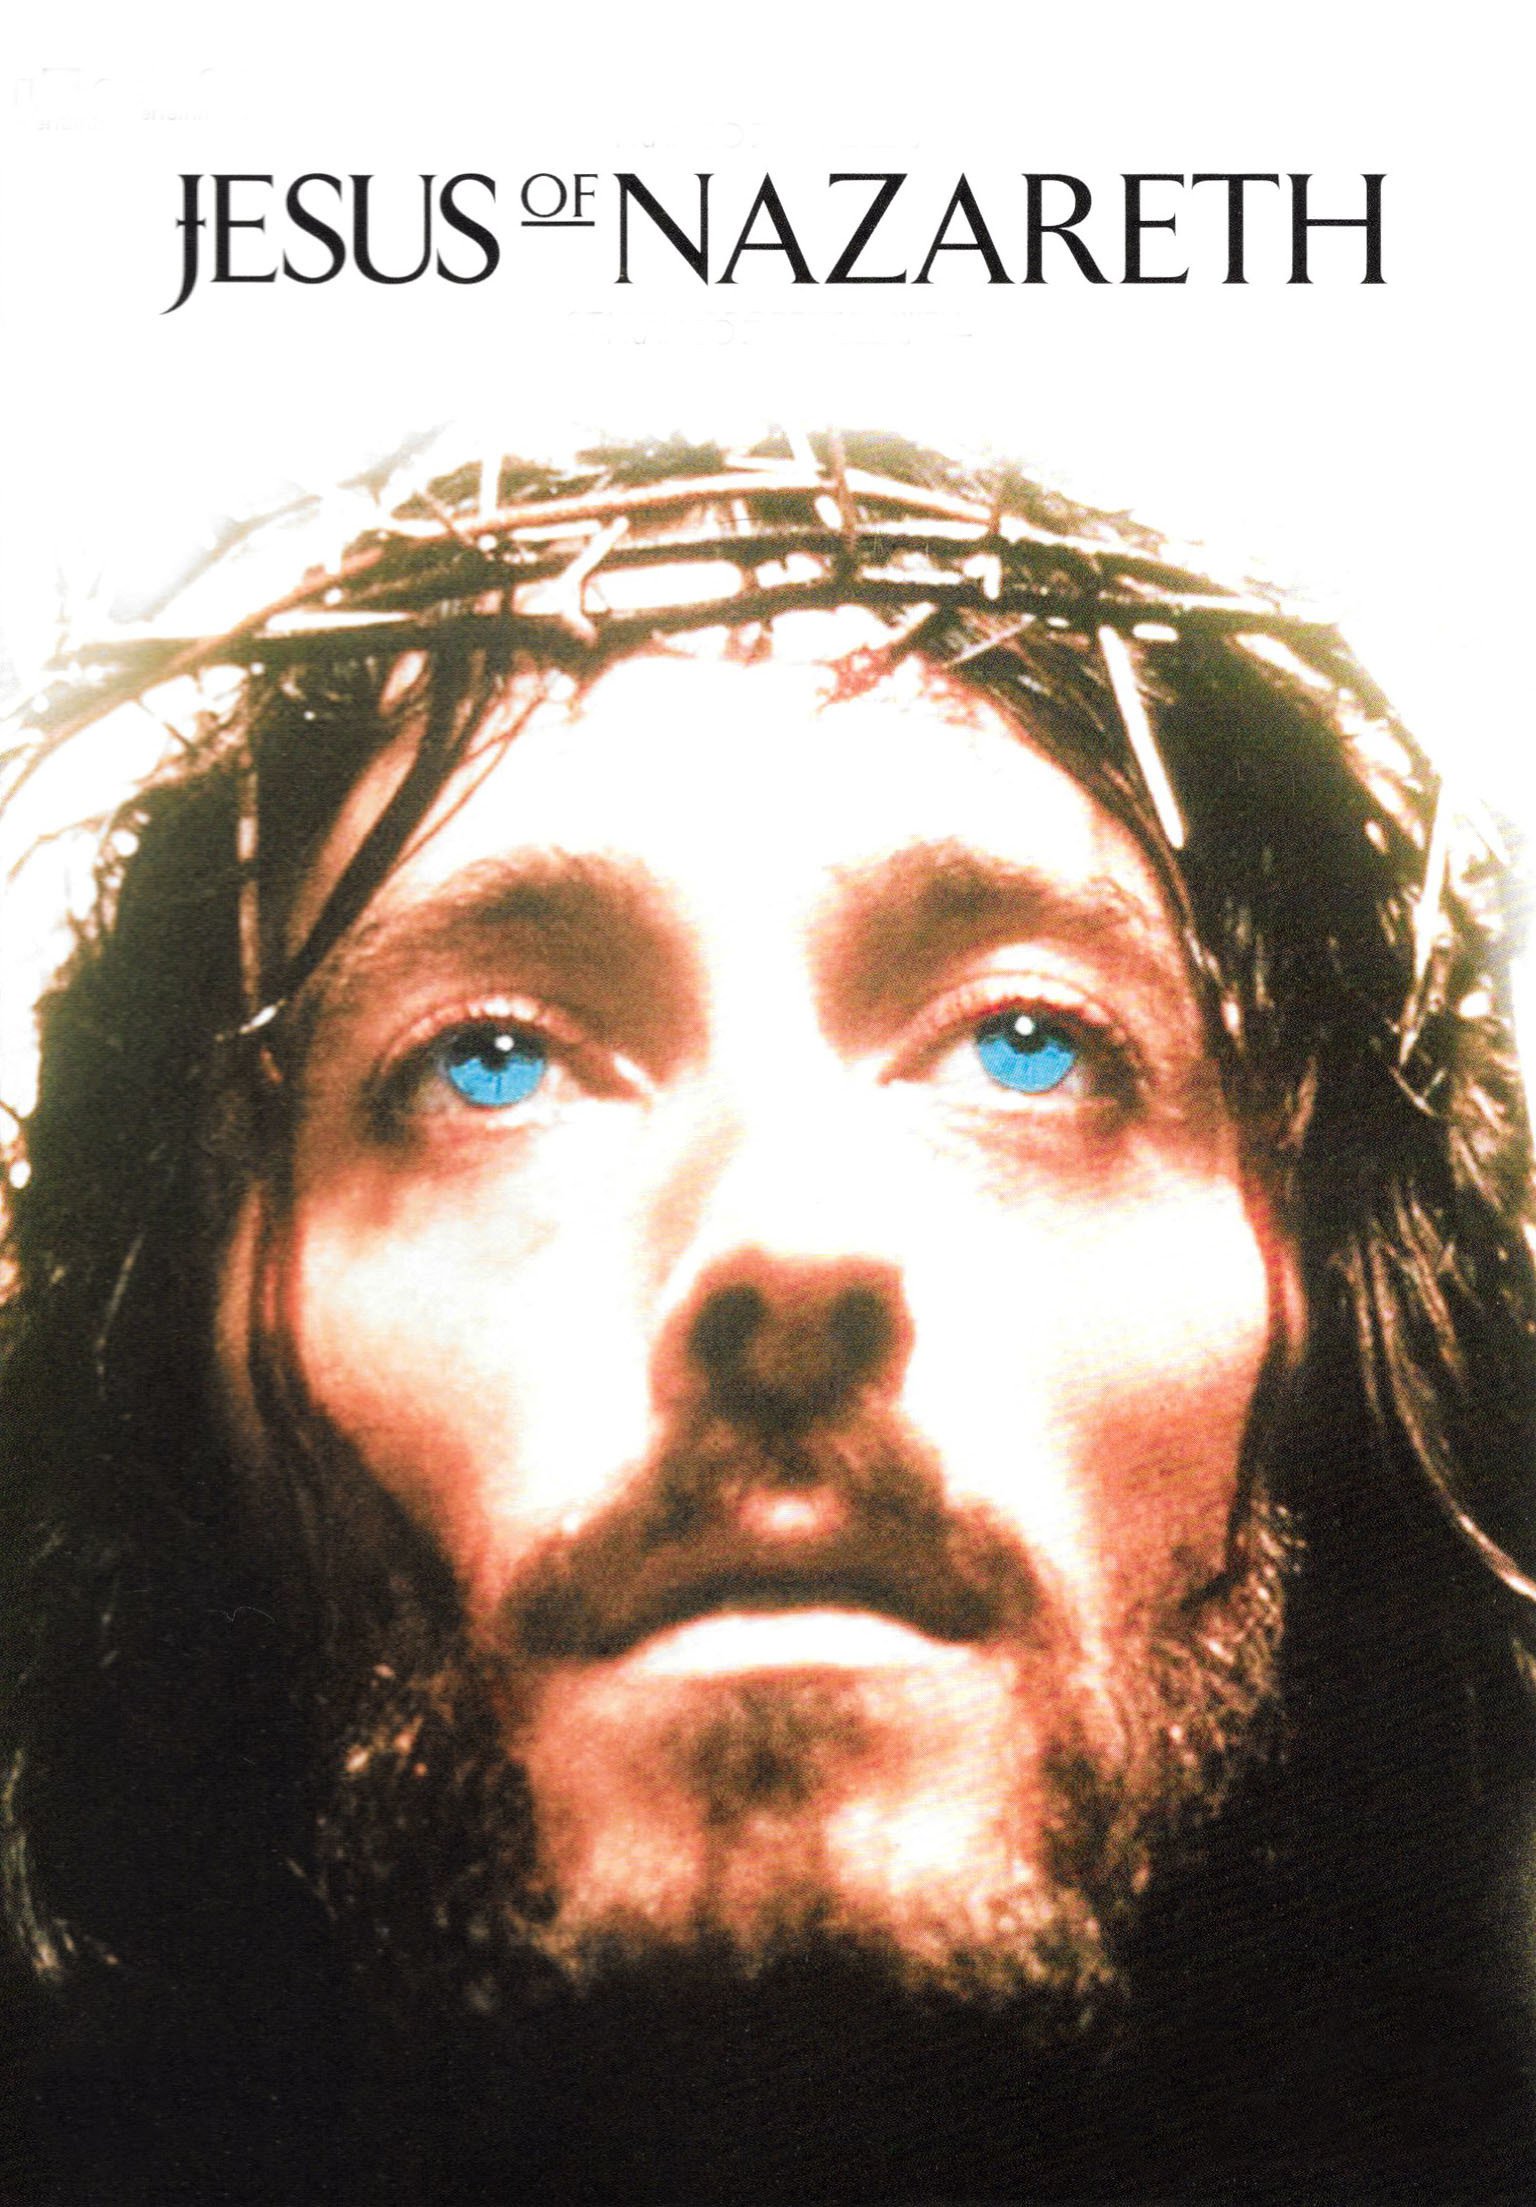 Ο Ιησούς από τη Ναζαρέτ - Οι Σπάνιες φωτογραφίες από τα γυρίσματα που ο Τζεφιρέλι θα ήθελε να εξαφανίσει... - Φωτογραφία 11